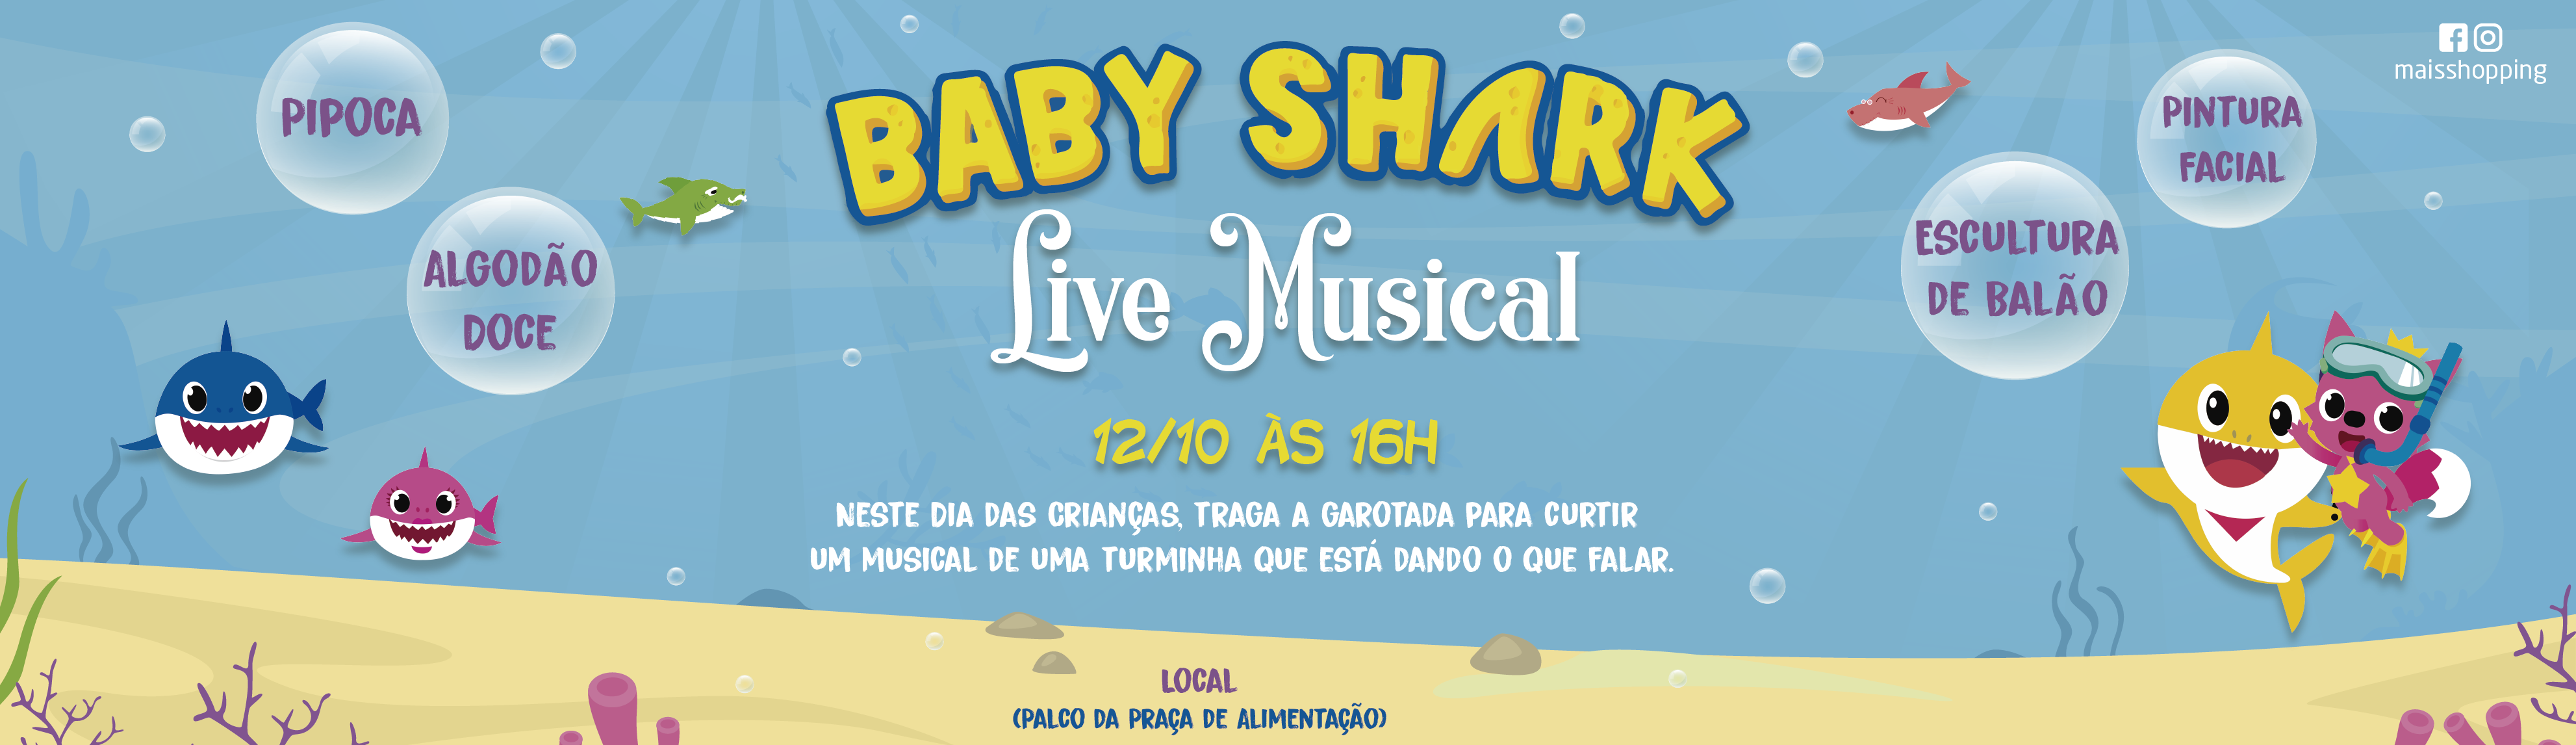 DIA DAS CRIANÇAS - SHOW DO BABY SHARK 